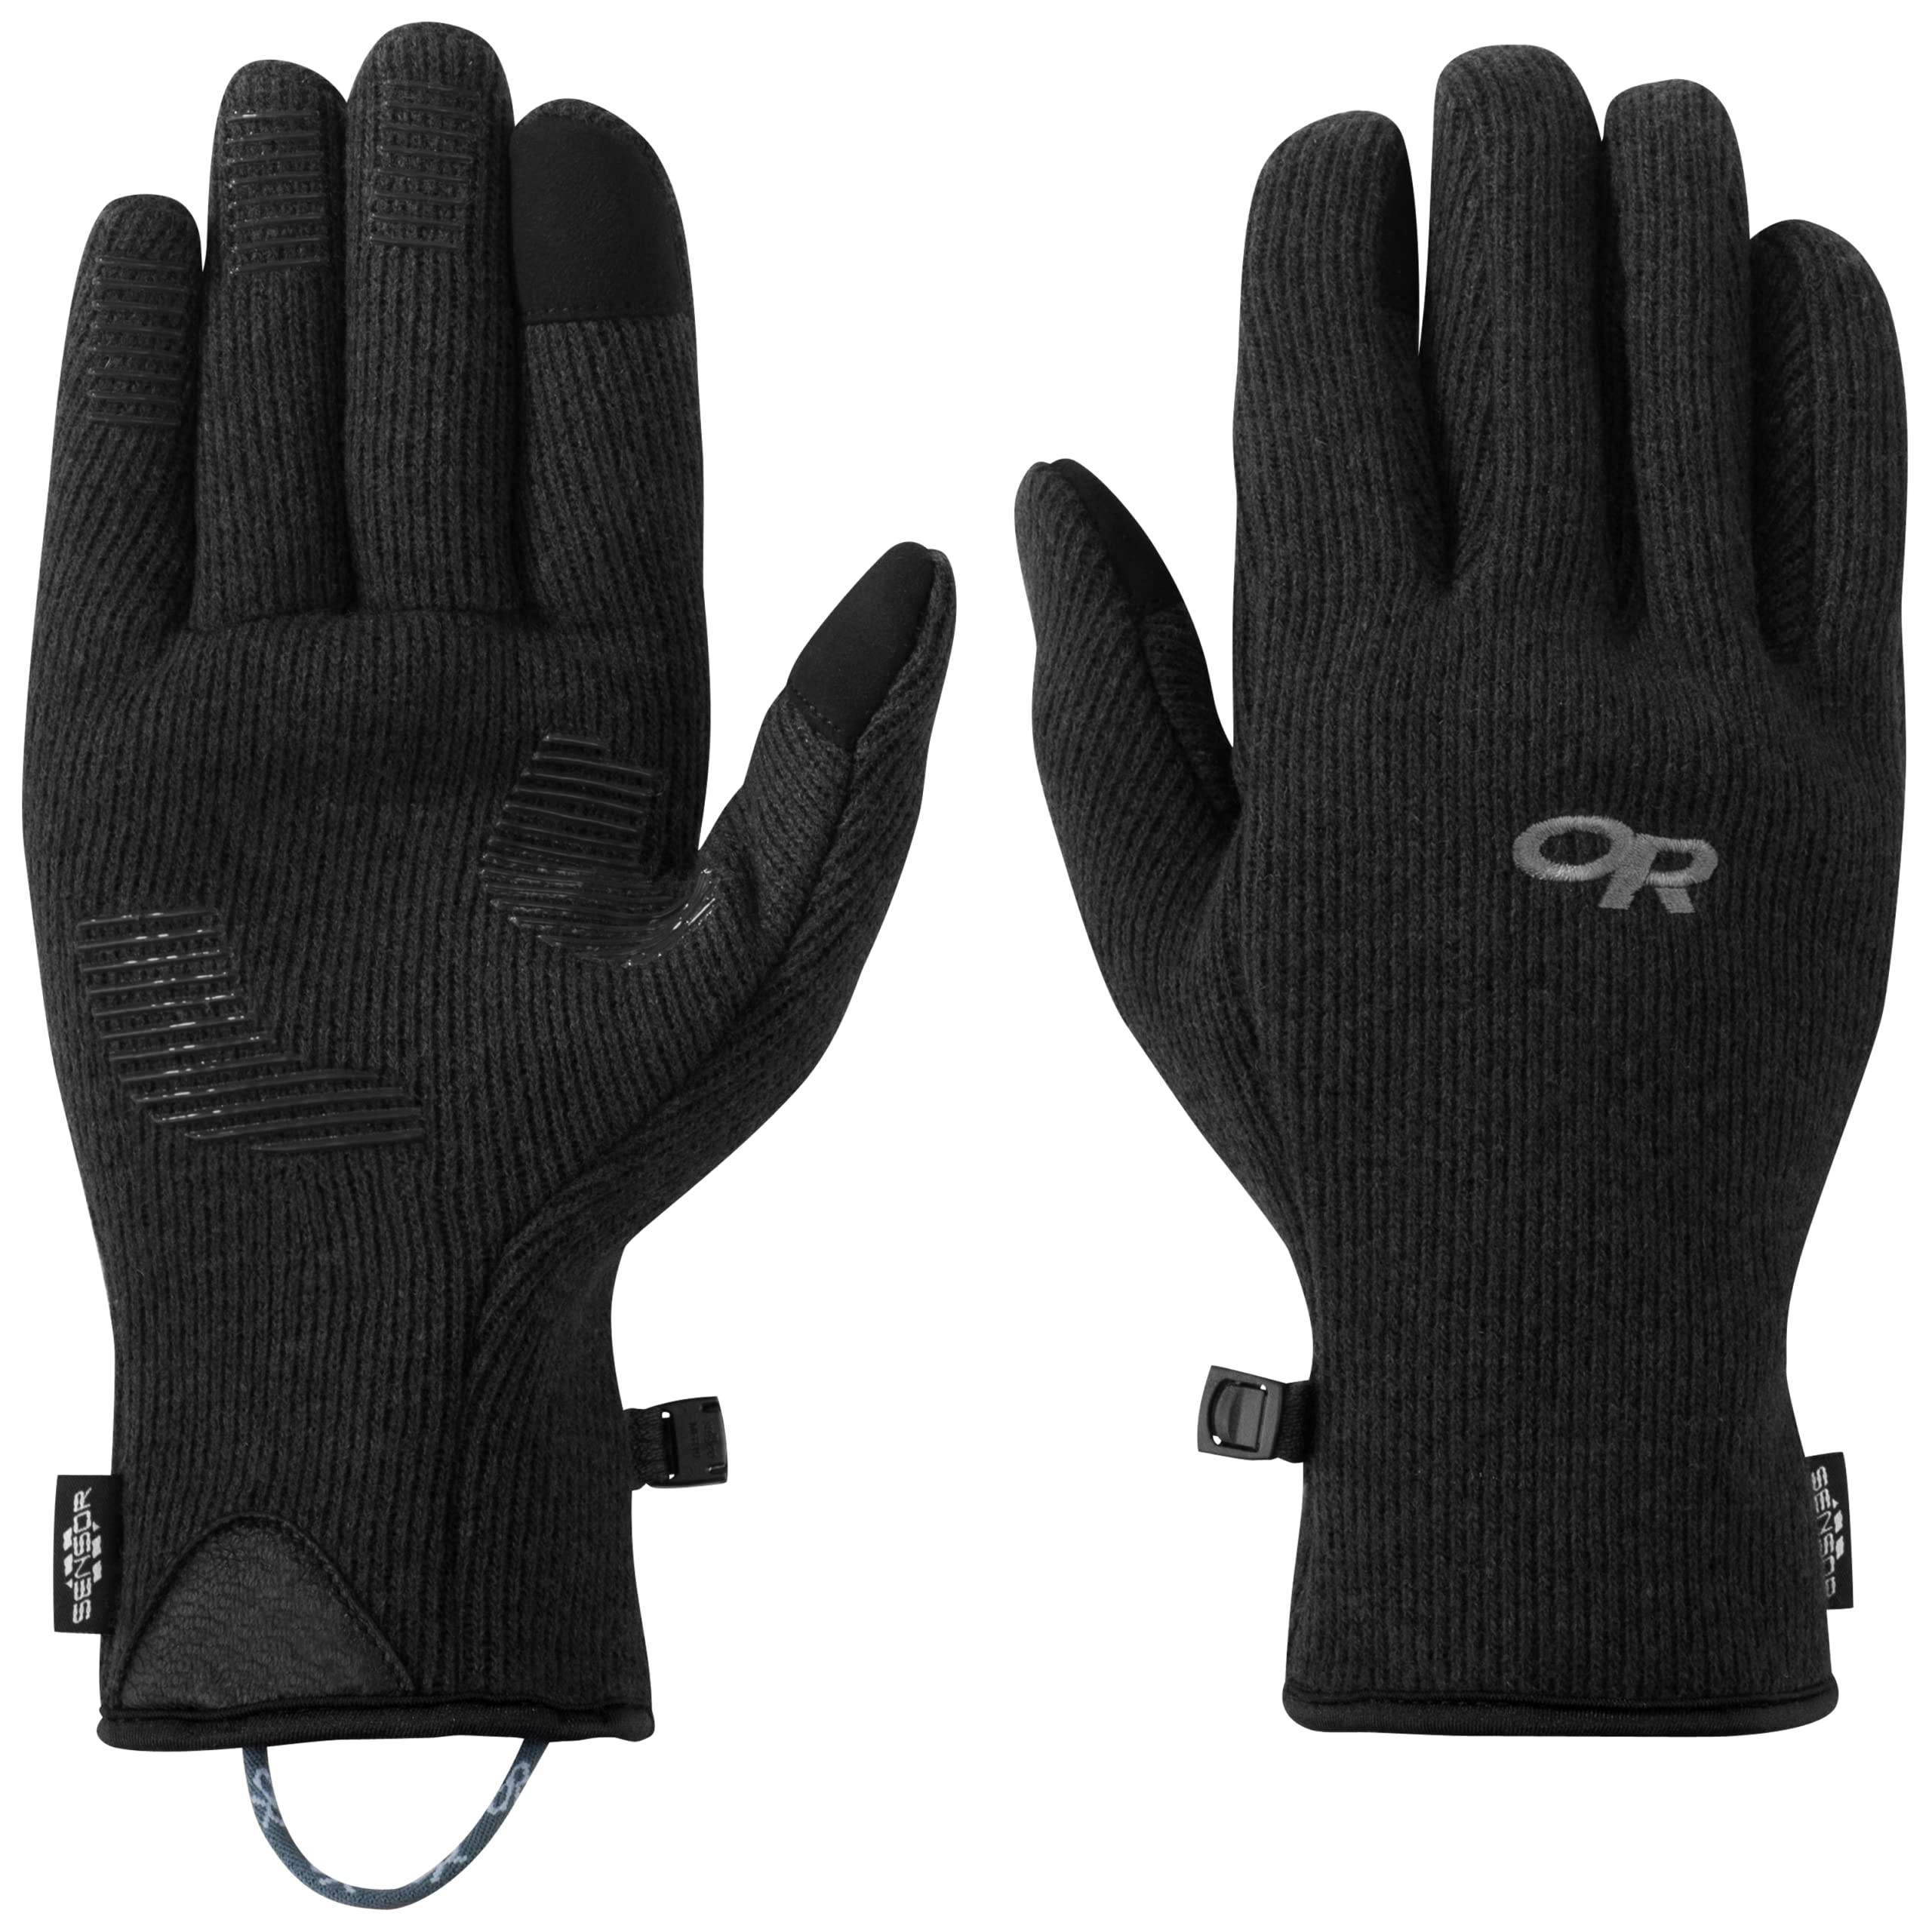 Outdoor Research Herren Flurry Sensor Handschuhe